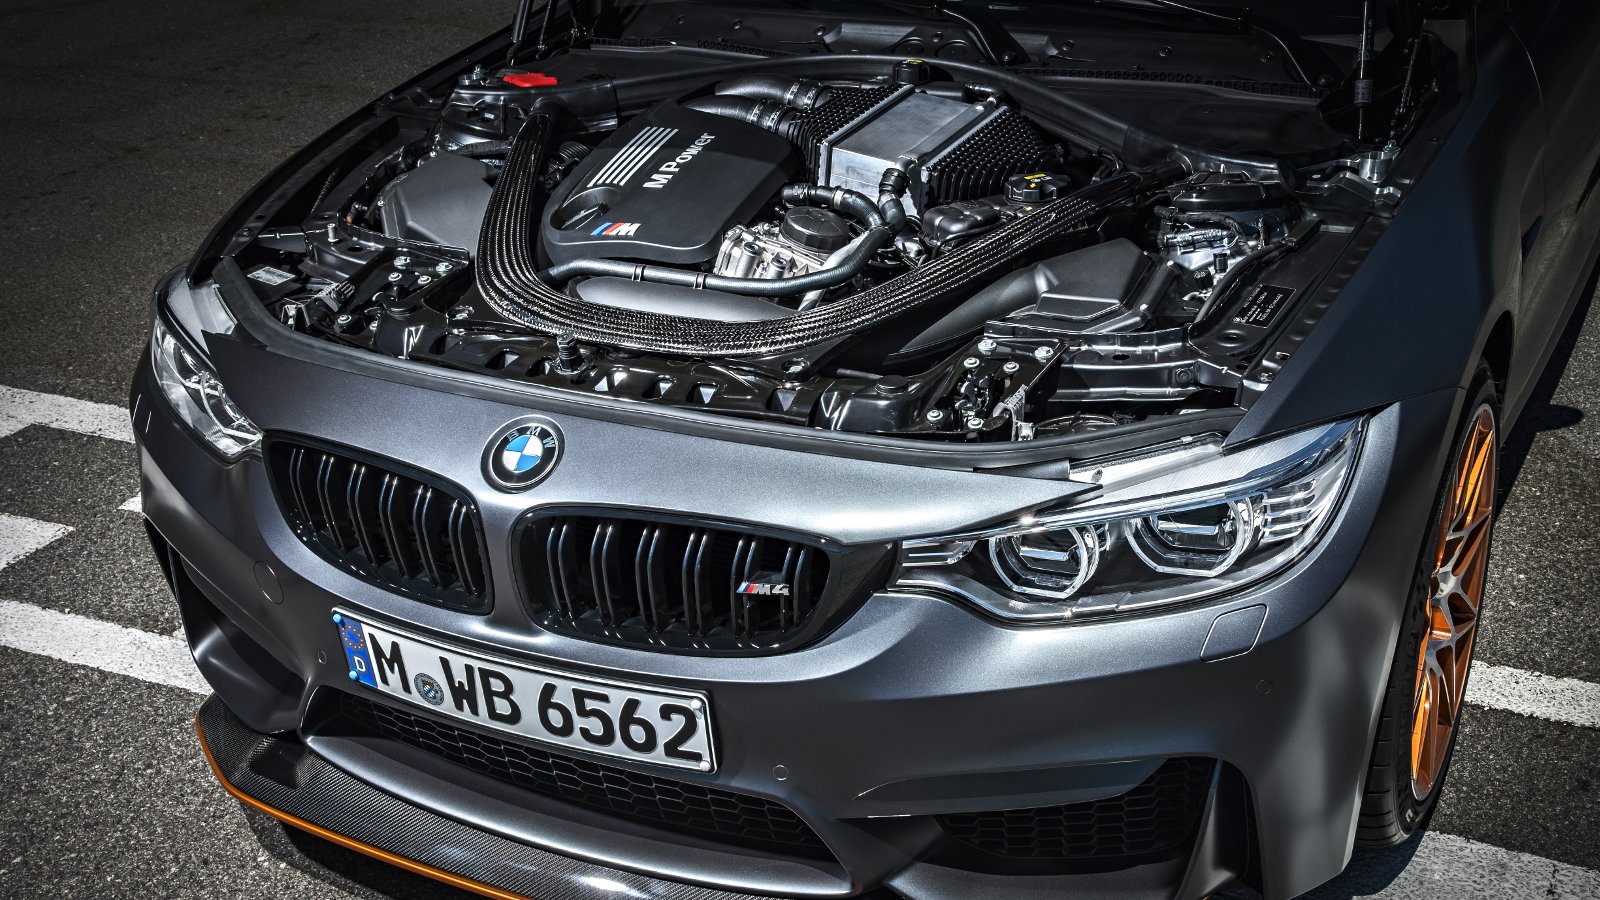 Présentation moteur: au coeur de la BMW M4 GTS